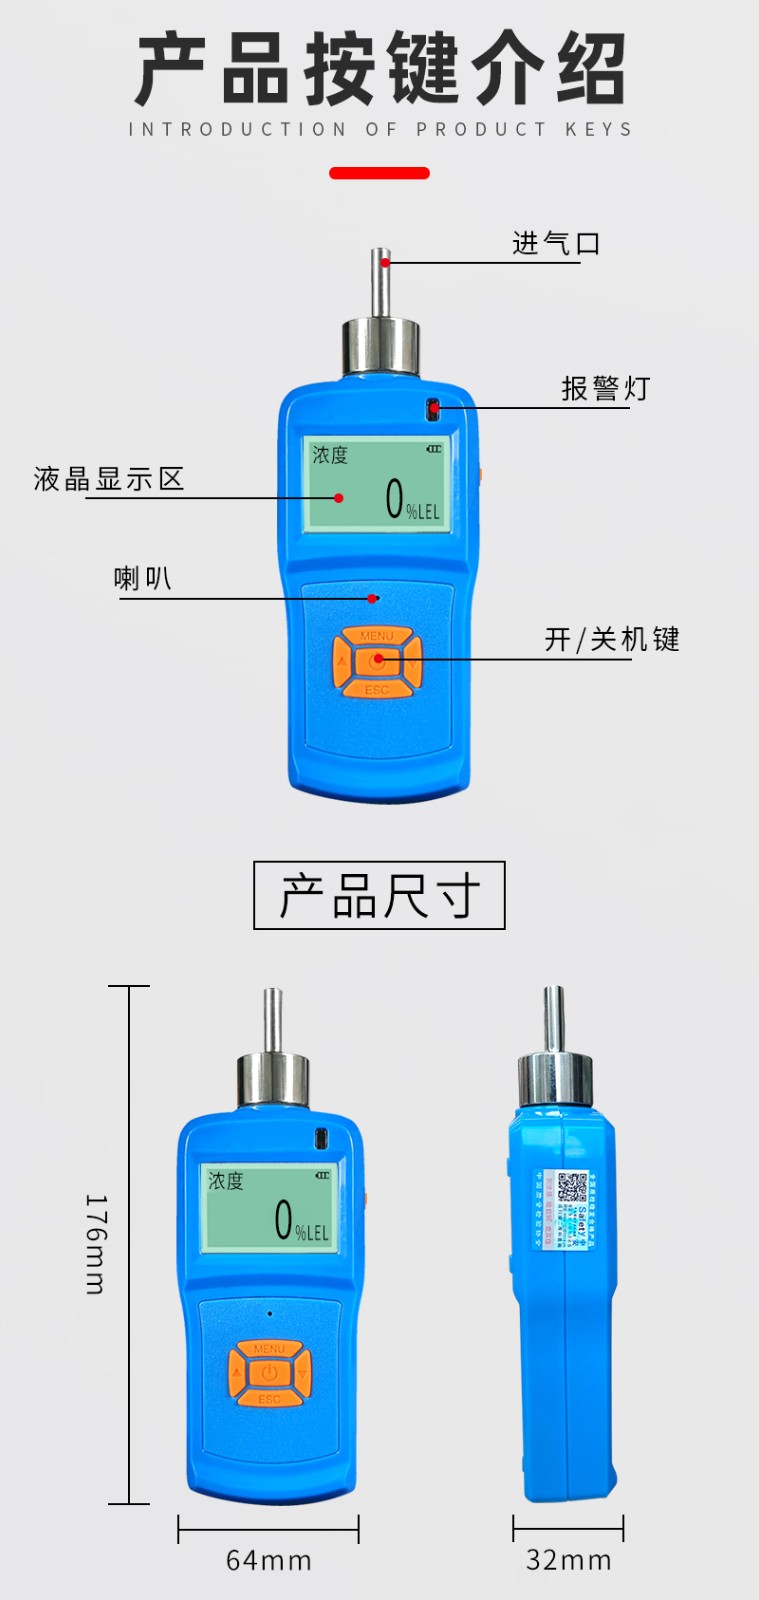 中安 KP830 便携式单一气体检测仪 内置泵吸式 氨气 NH3